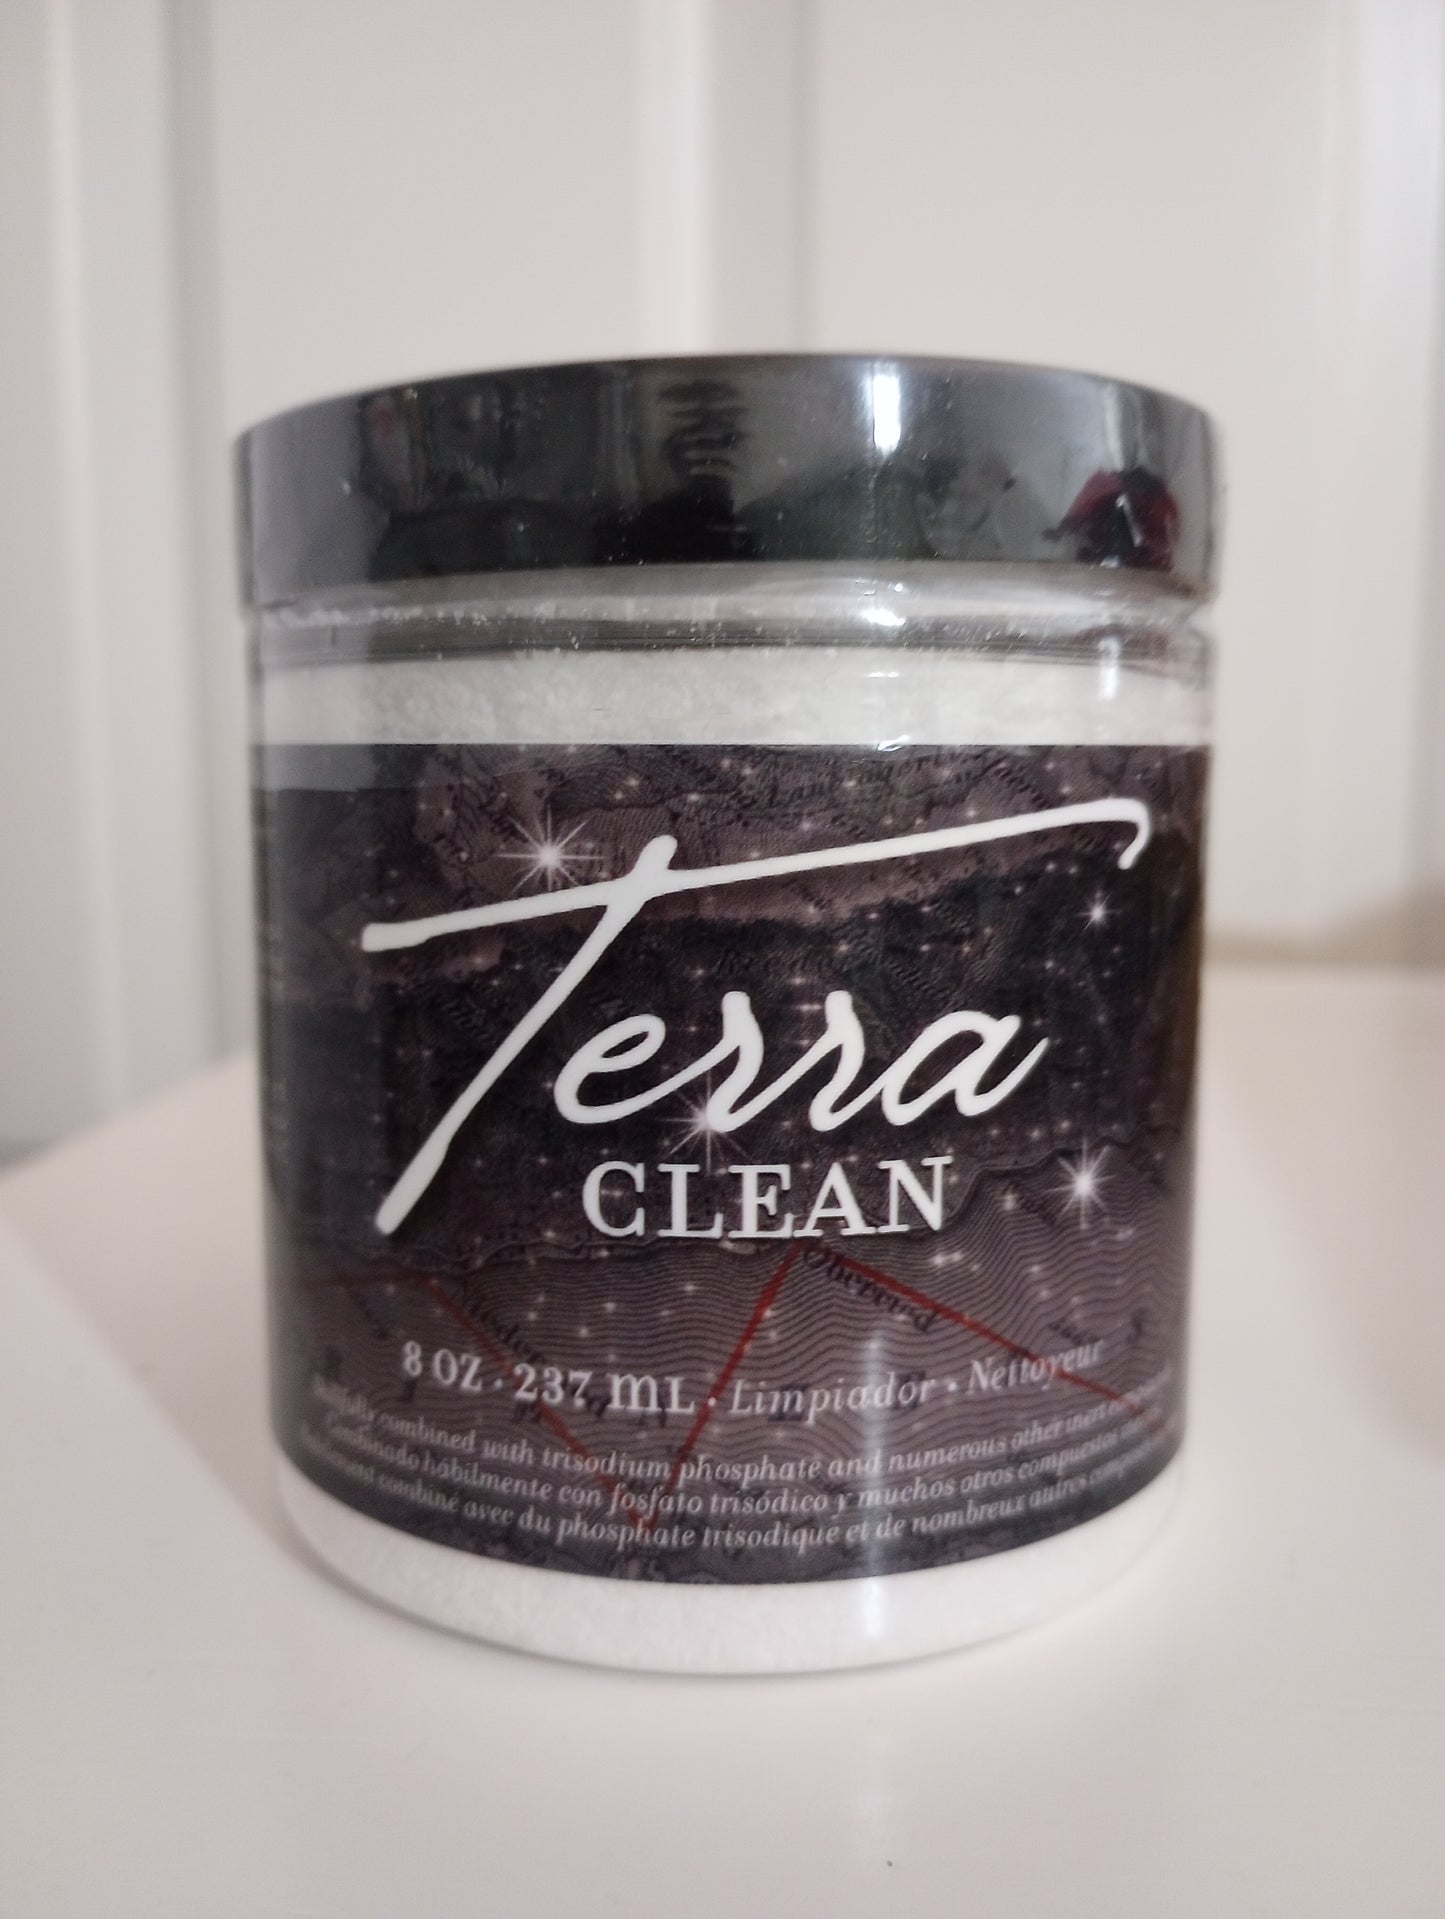 Terra Clean